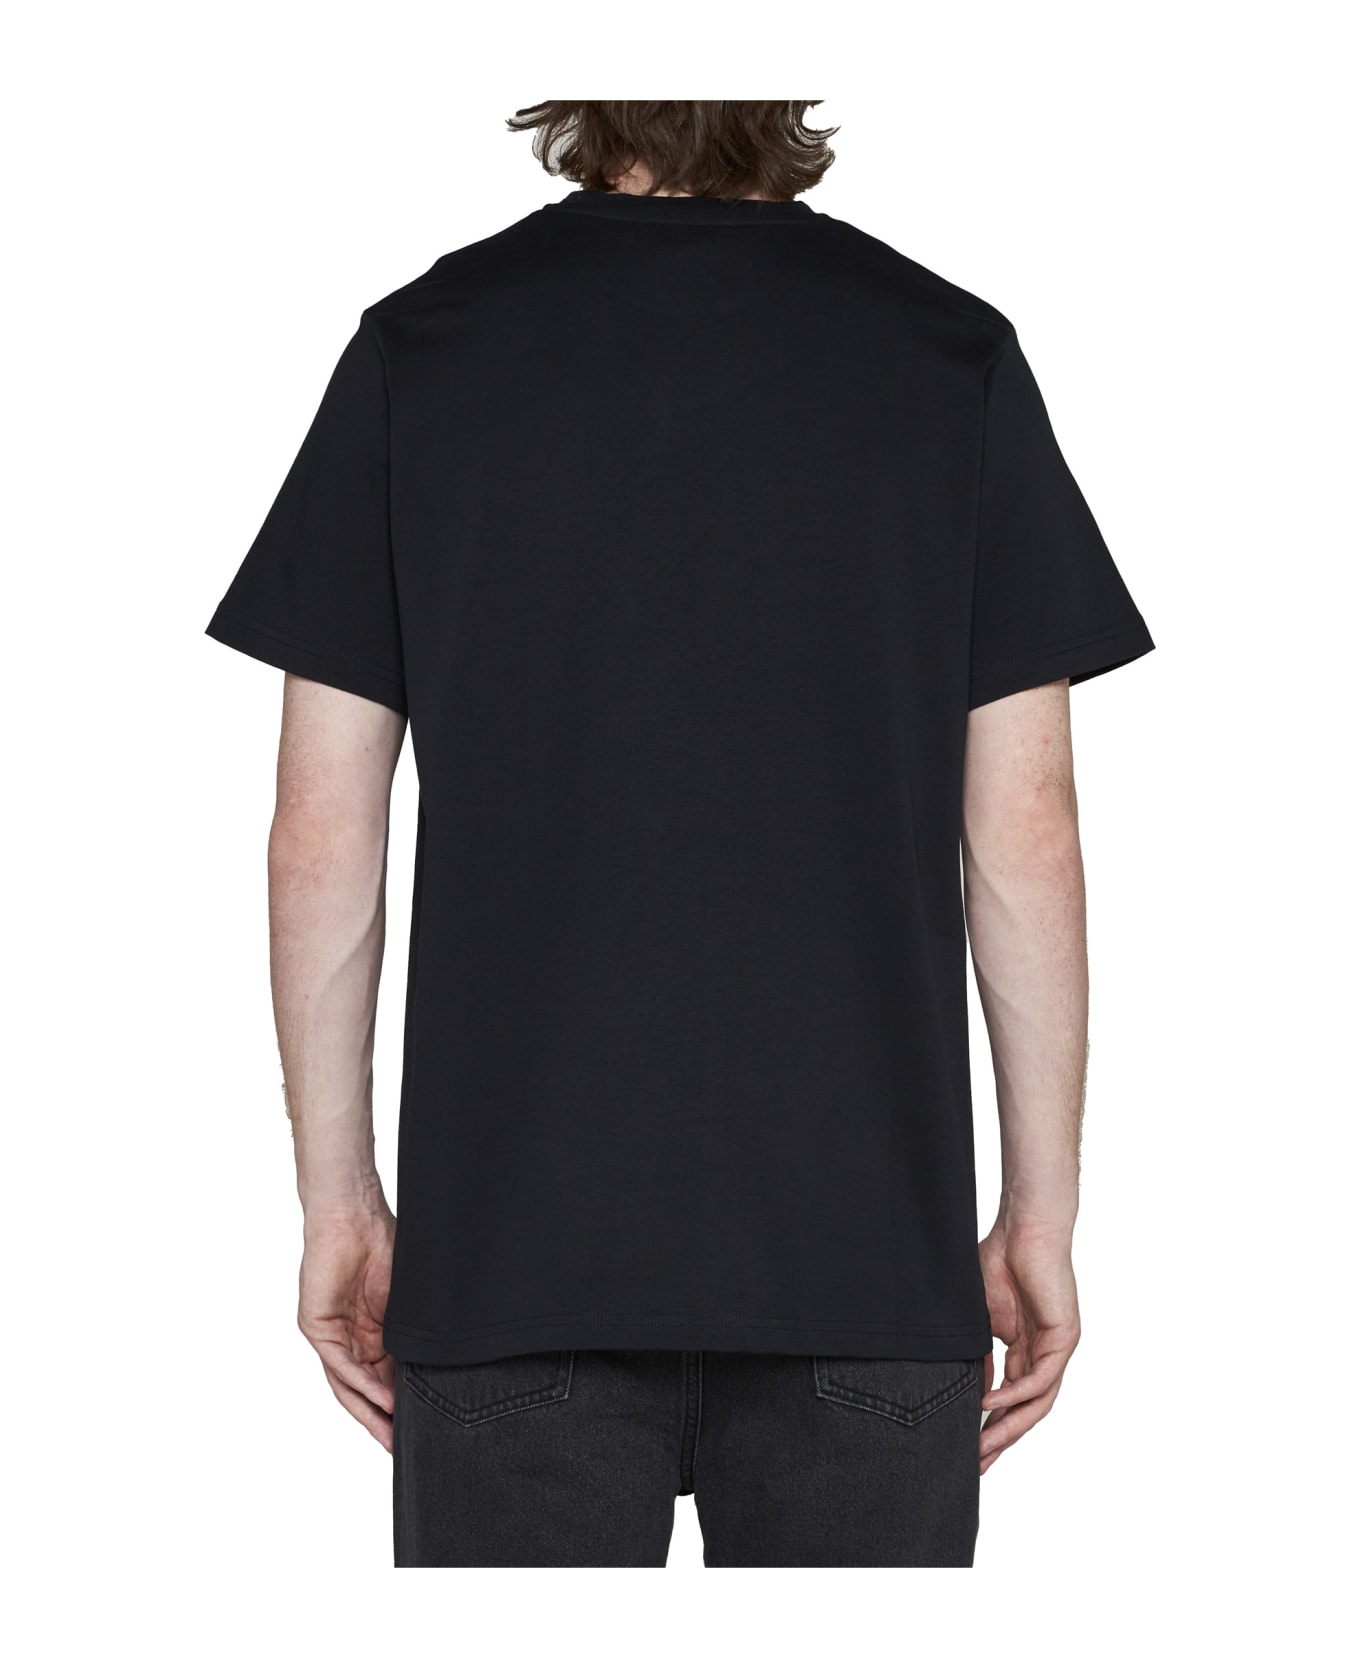 A.P.C. Raymond T-shirt - Black